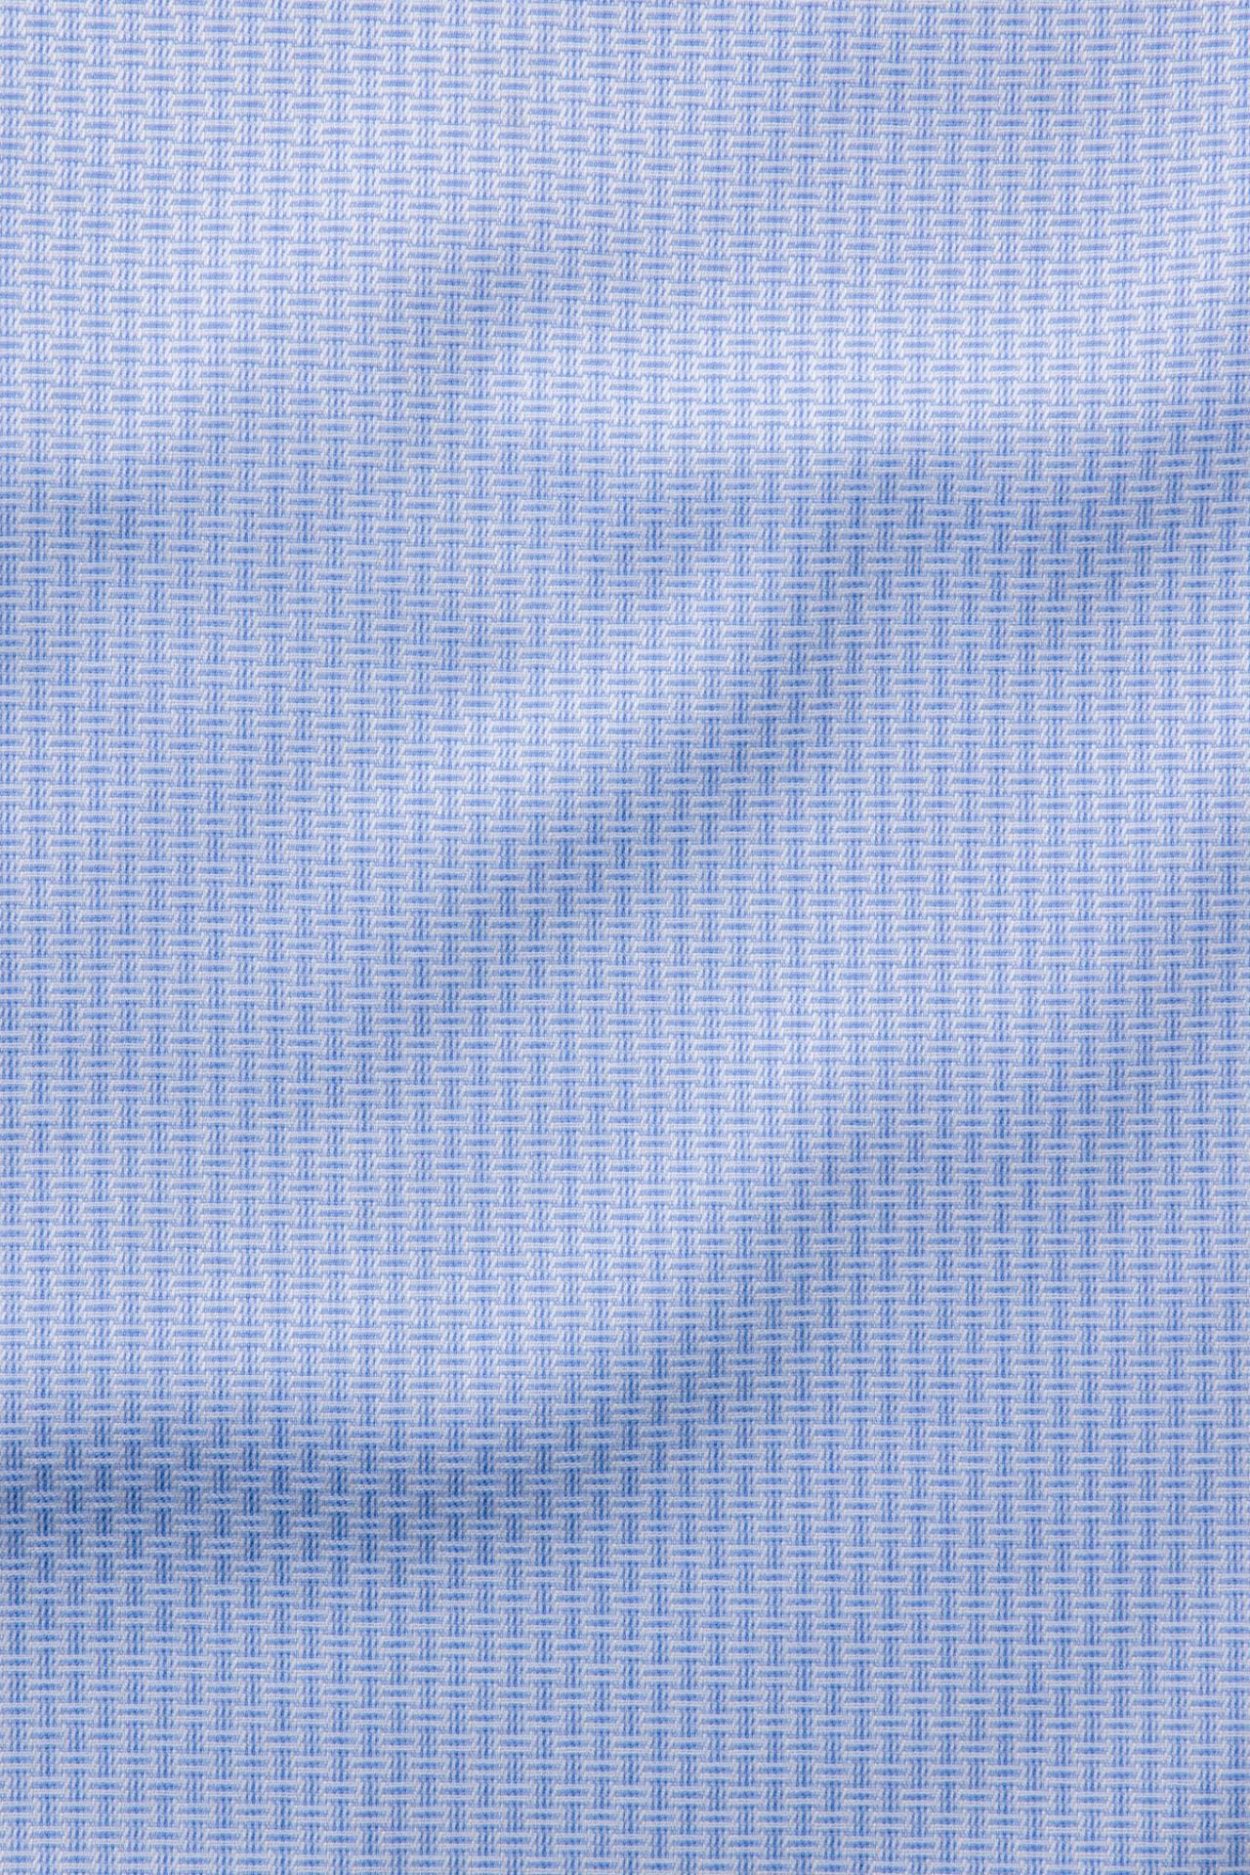 Pánská světle modrá non-iron košile s jemným vzorem